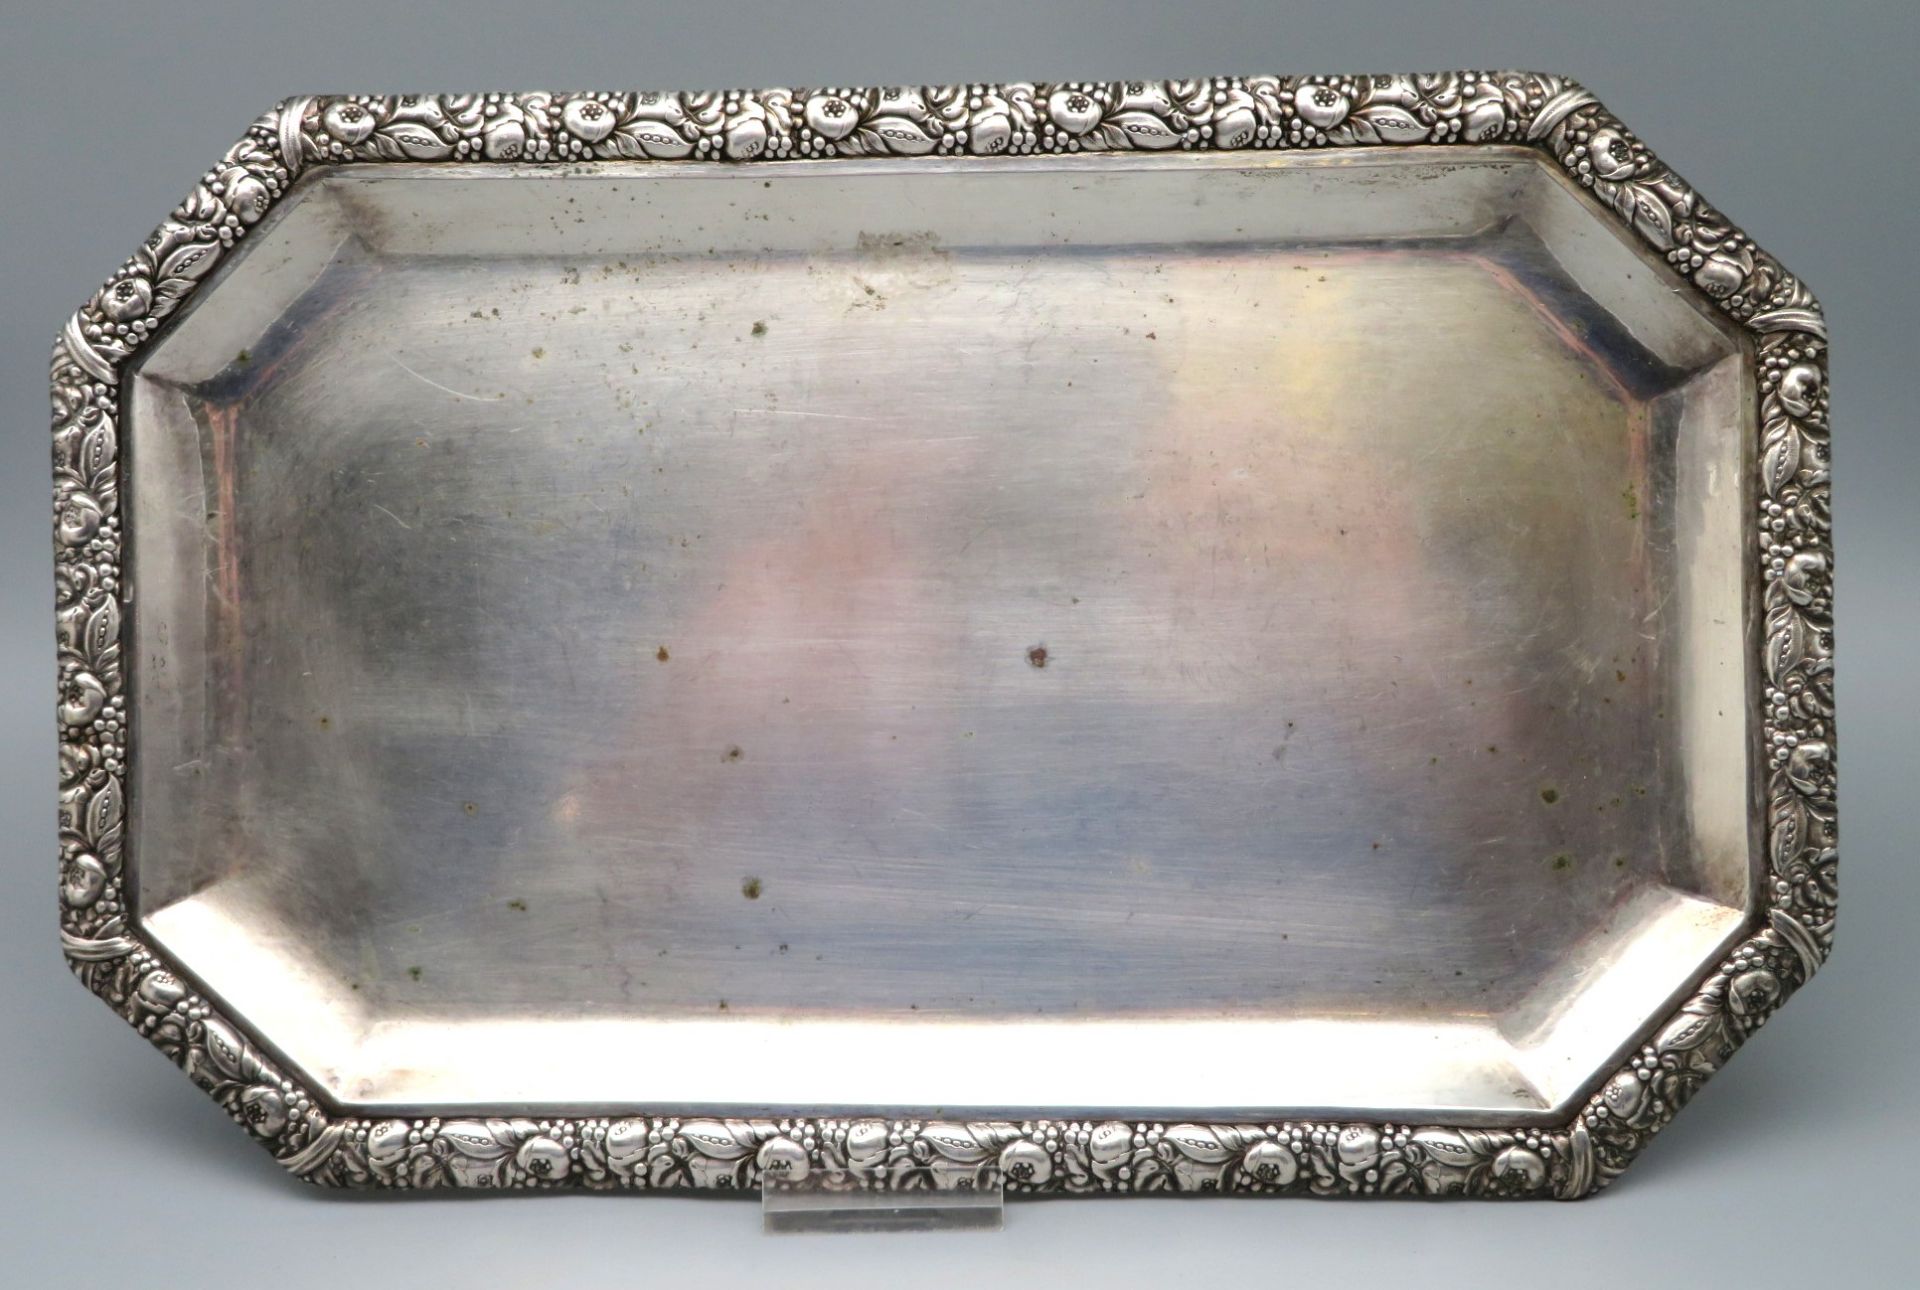 Tablett, Rand umlaufend mit reliefiertem Granatapfel- und vegetabilem Dekor, Silber 800/000, punzie